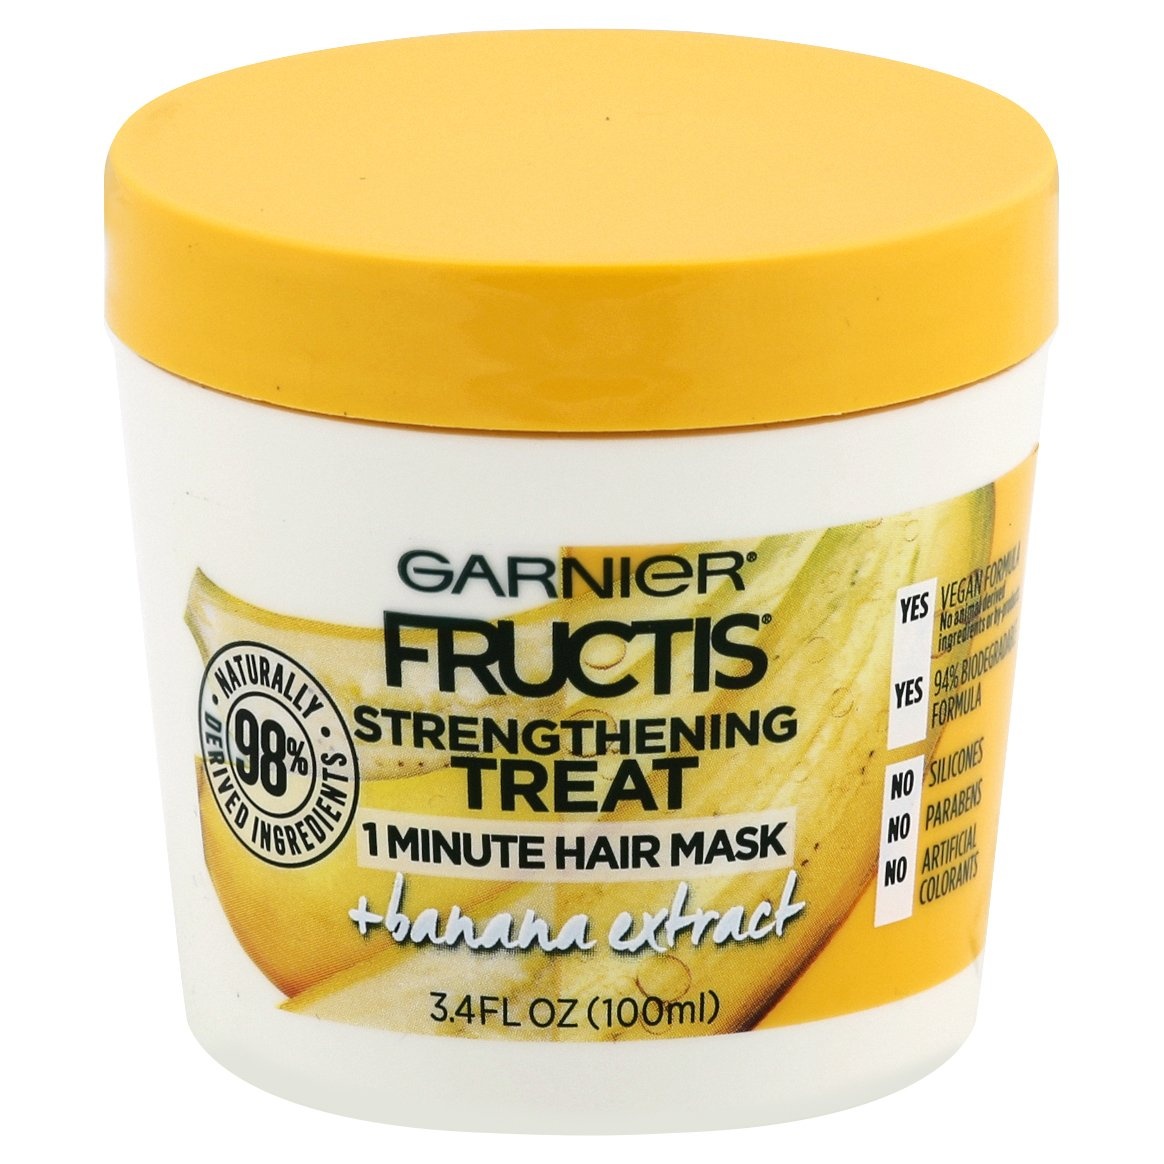 slide 1 of 1, Garnier Fructis Strengthening Treat 1 Minute Hair Mask, 3.4 oz